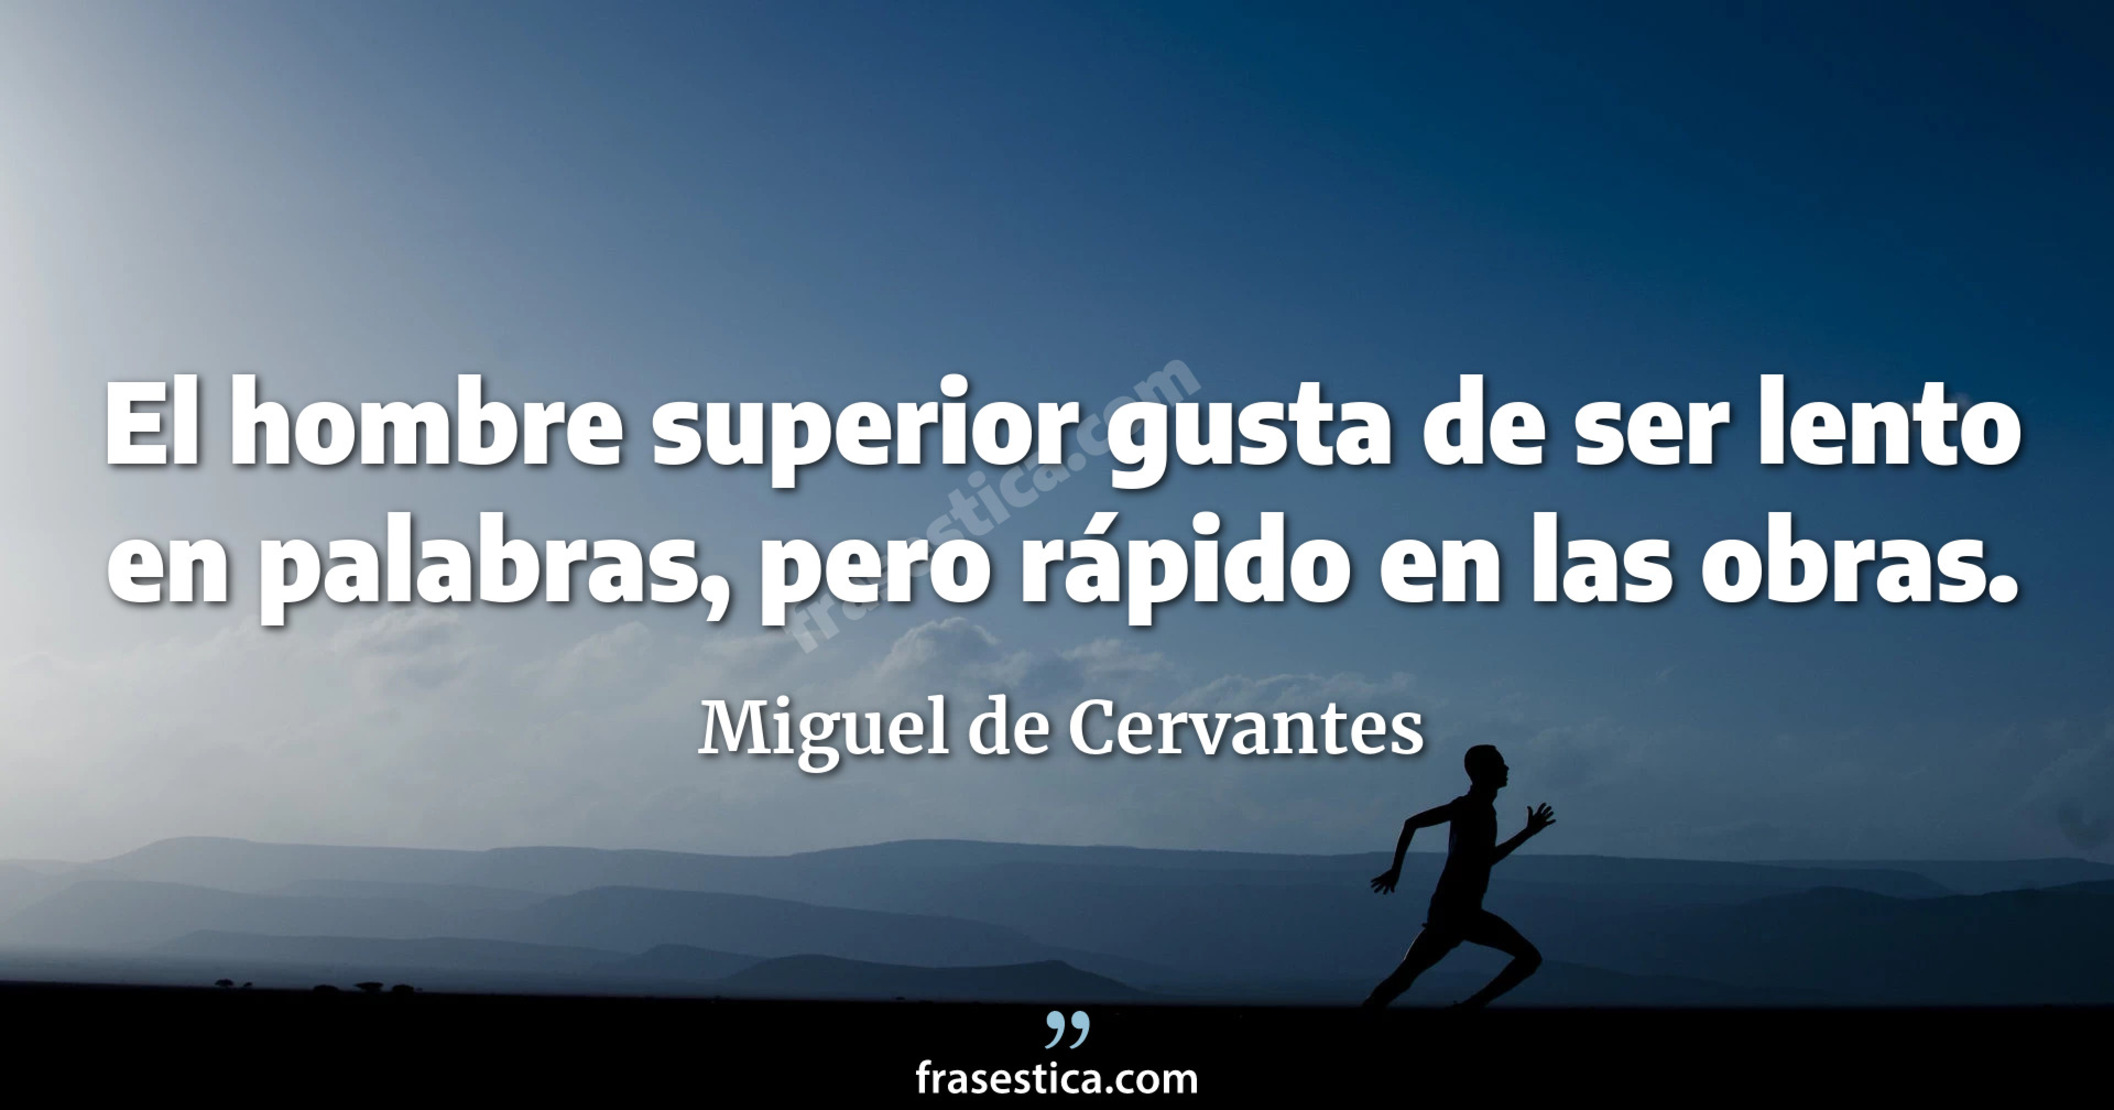 El hombre superior gusta de ser lento en palabras, pero rápido en las obras. - Miguel de Cervantes